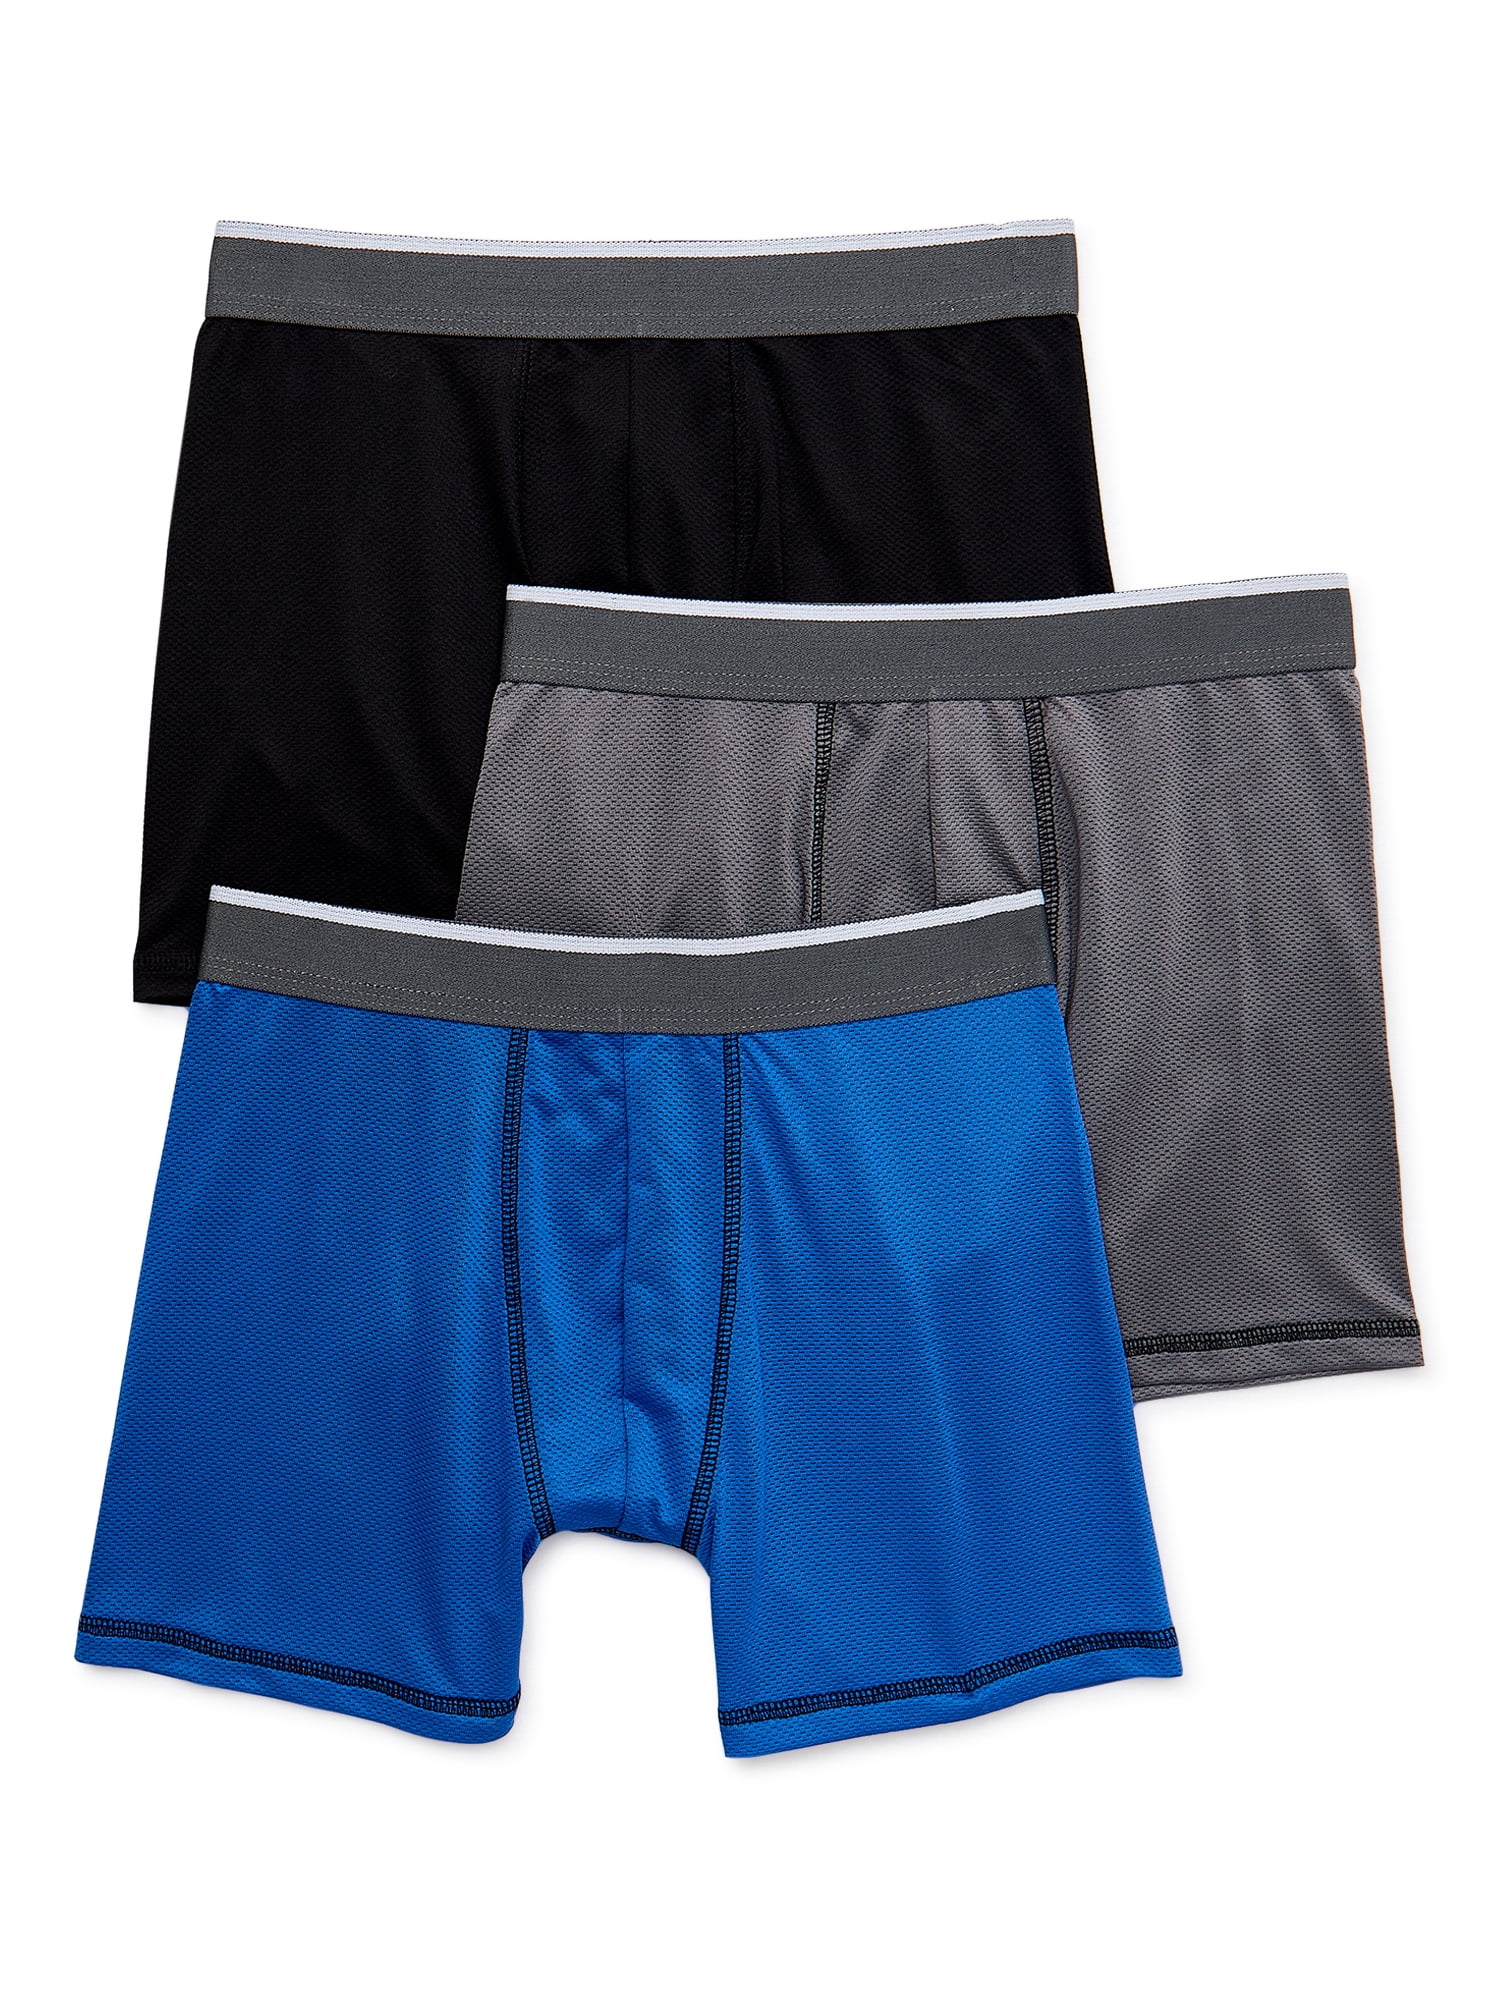 Wonder Nation Boys Boxer Brief Solid Underwear, 3-Pack, Sizes S-XL ...